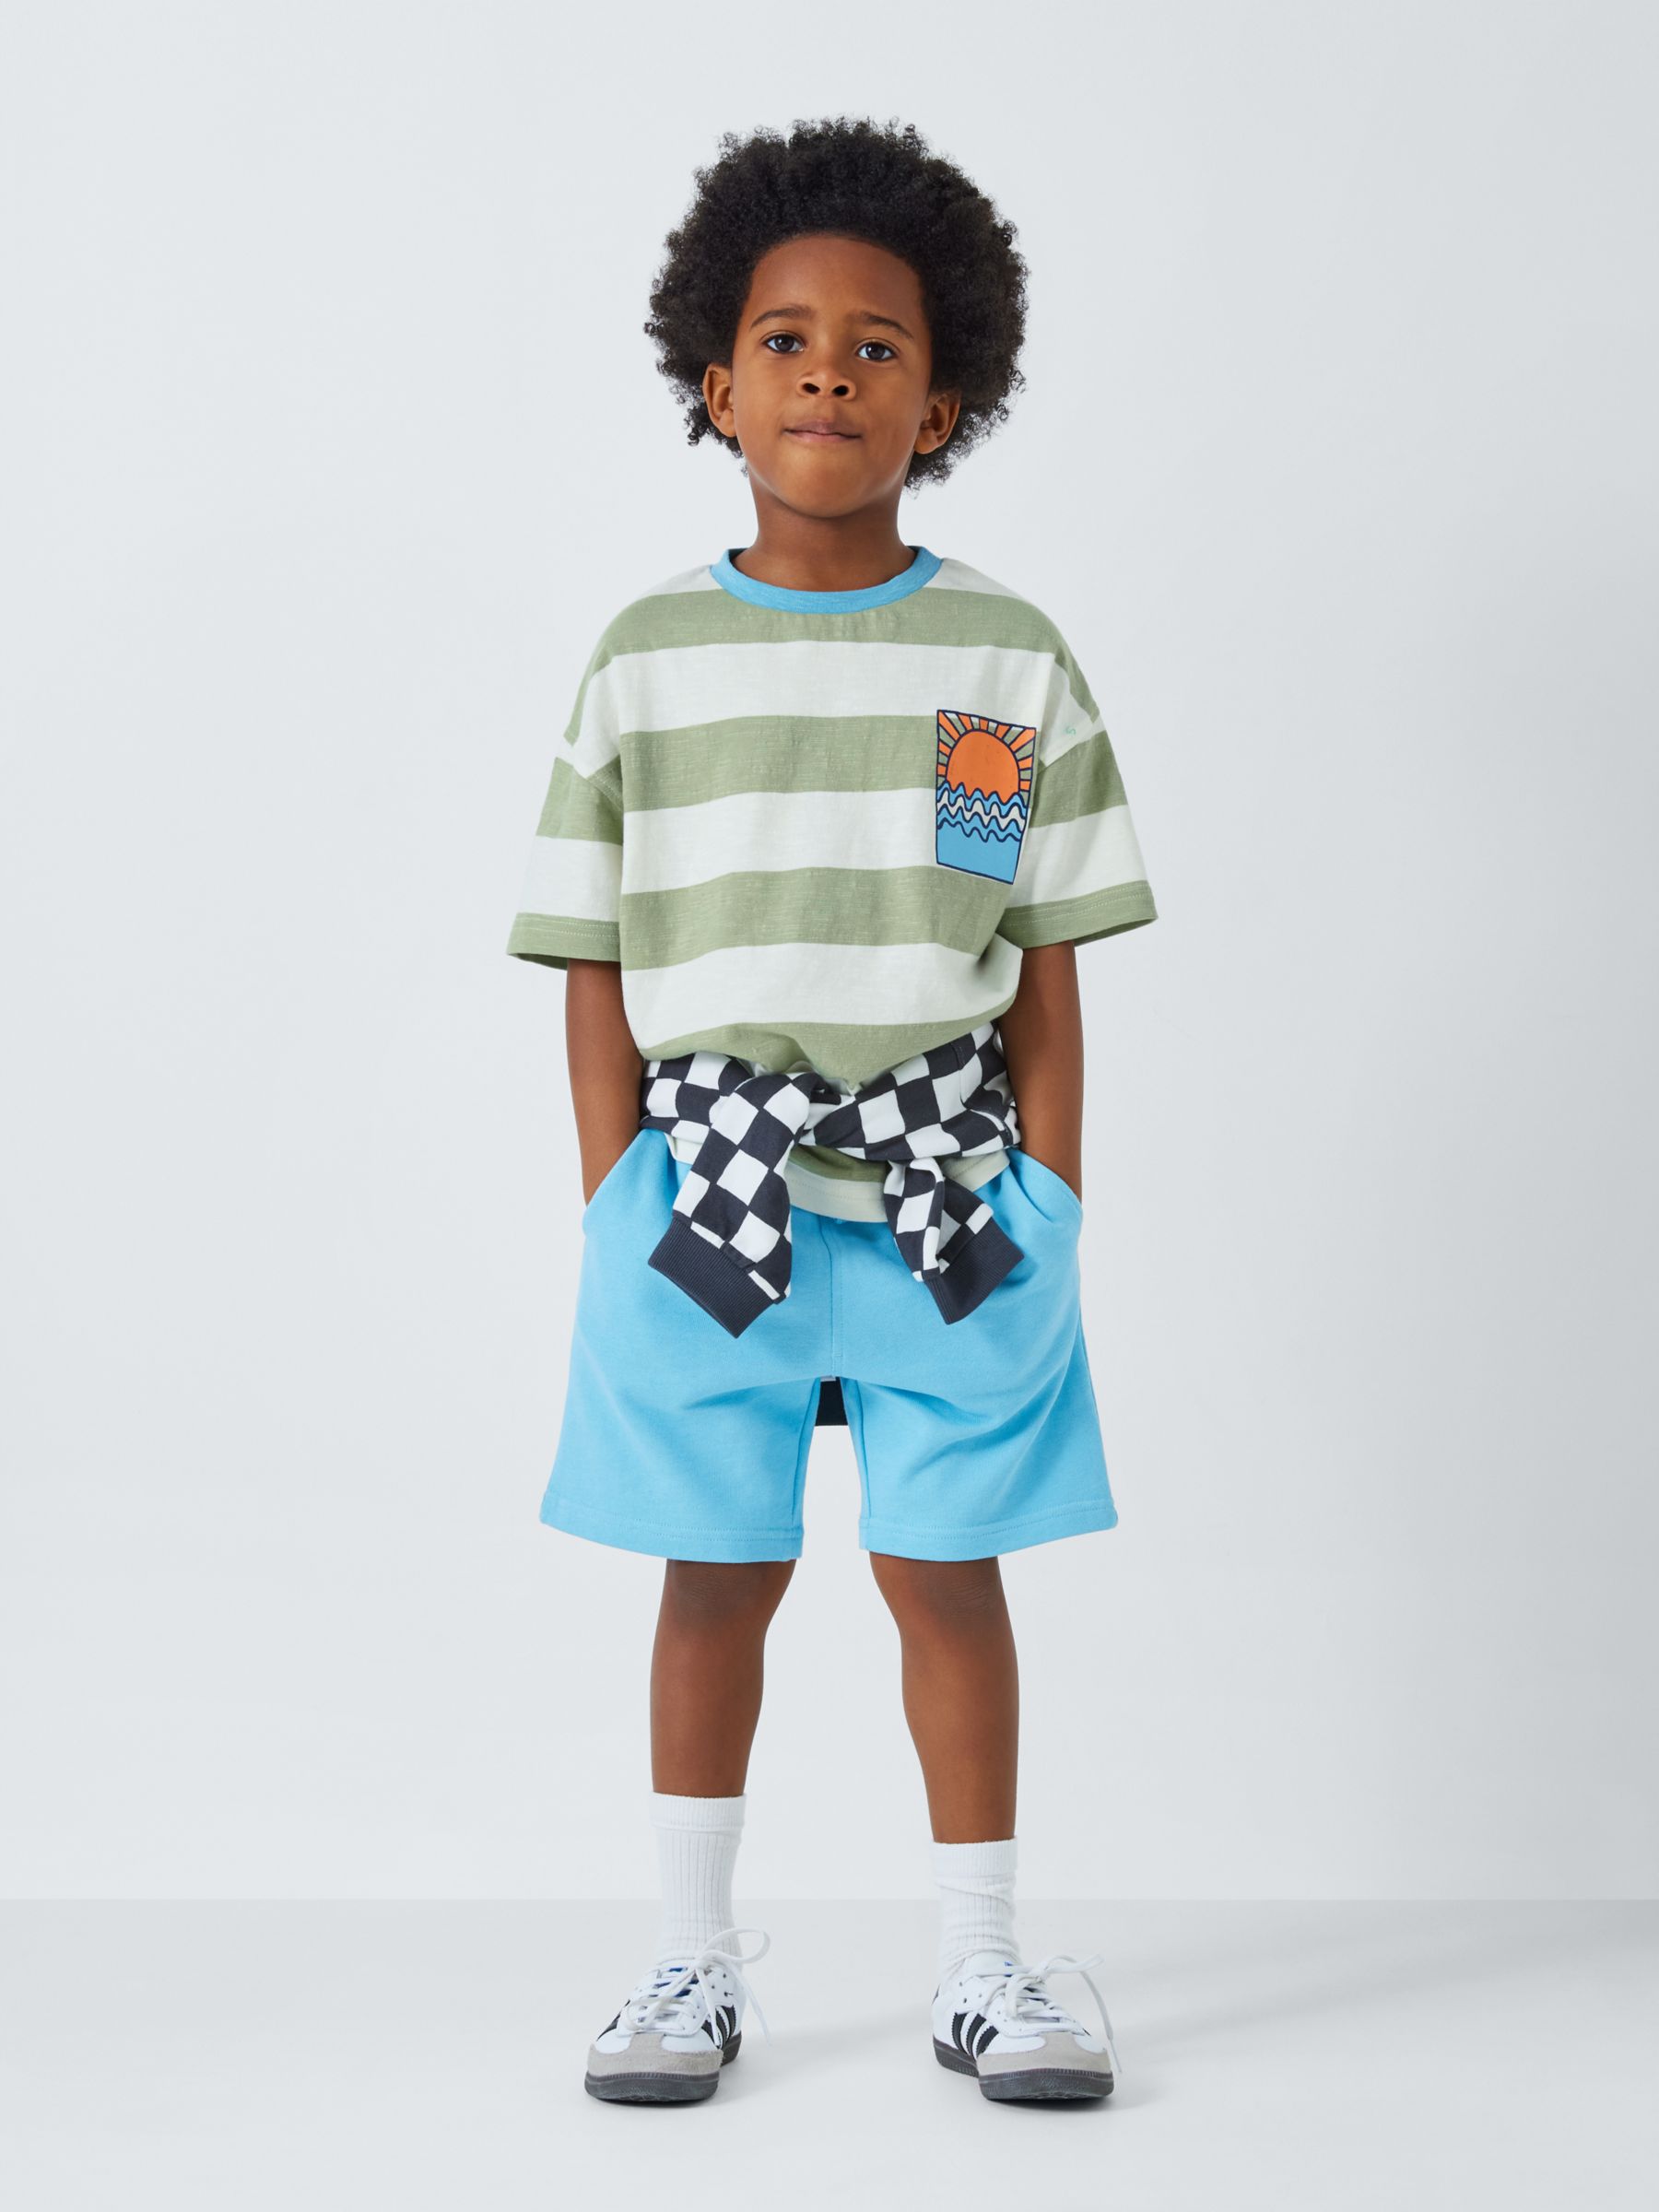 John Lewis ANYDAY Kids' Stripe Sun Graphic T-Shirt, Sage Green, 8 years